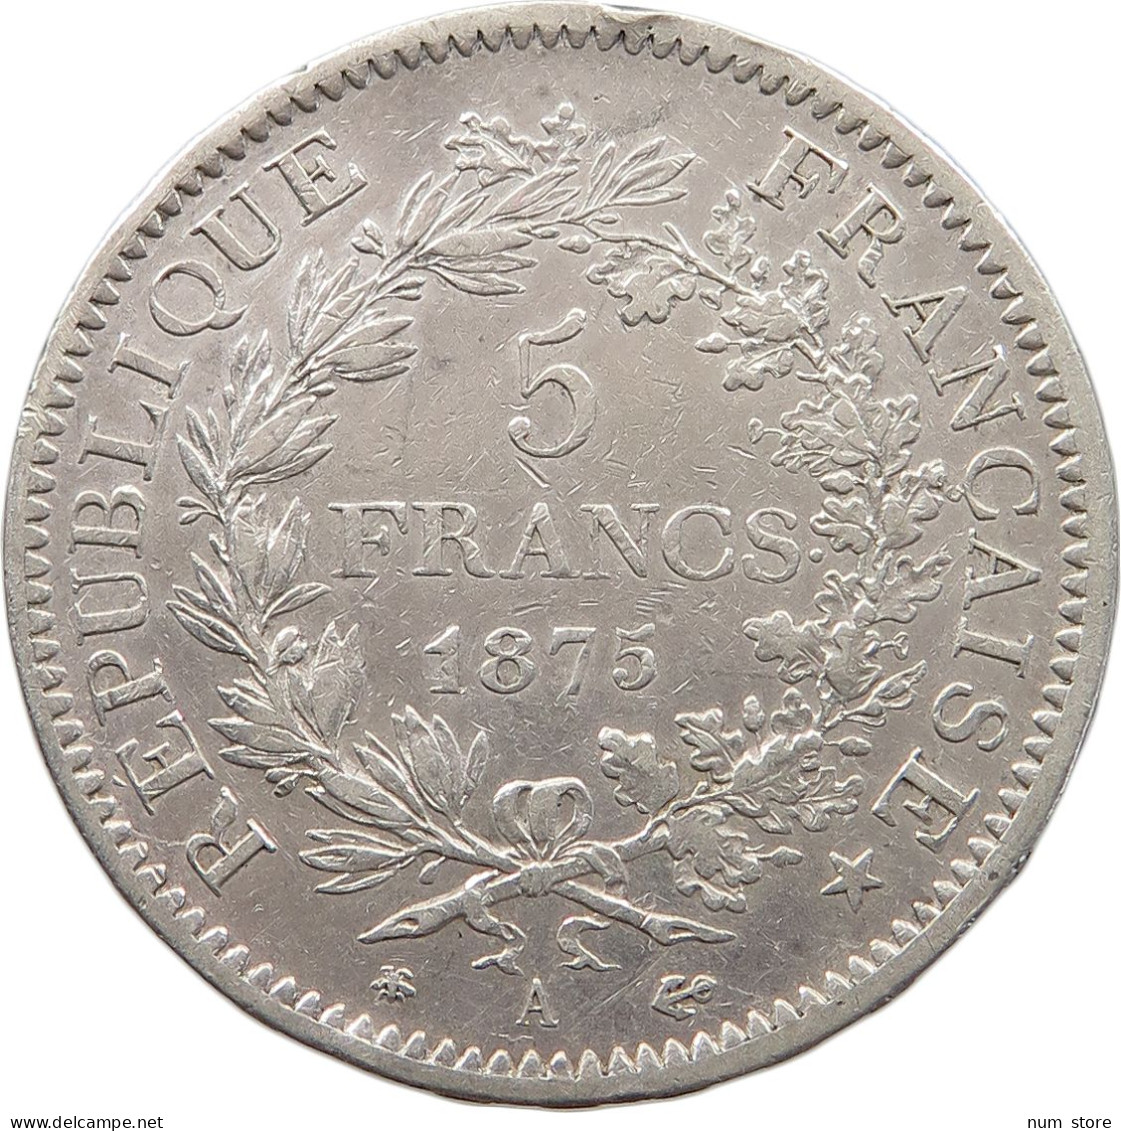 FRANCE 5 FRANCS 1875 A  #t120 0057 - 5 Francs